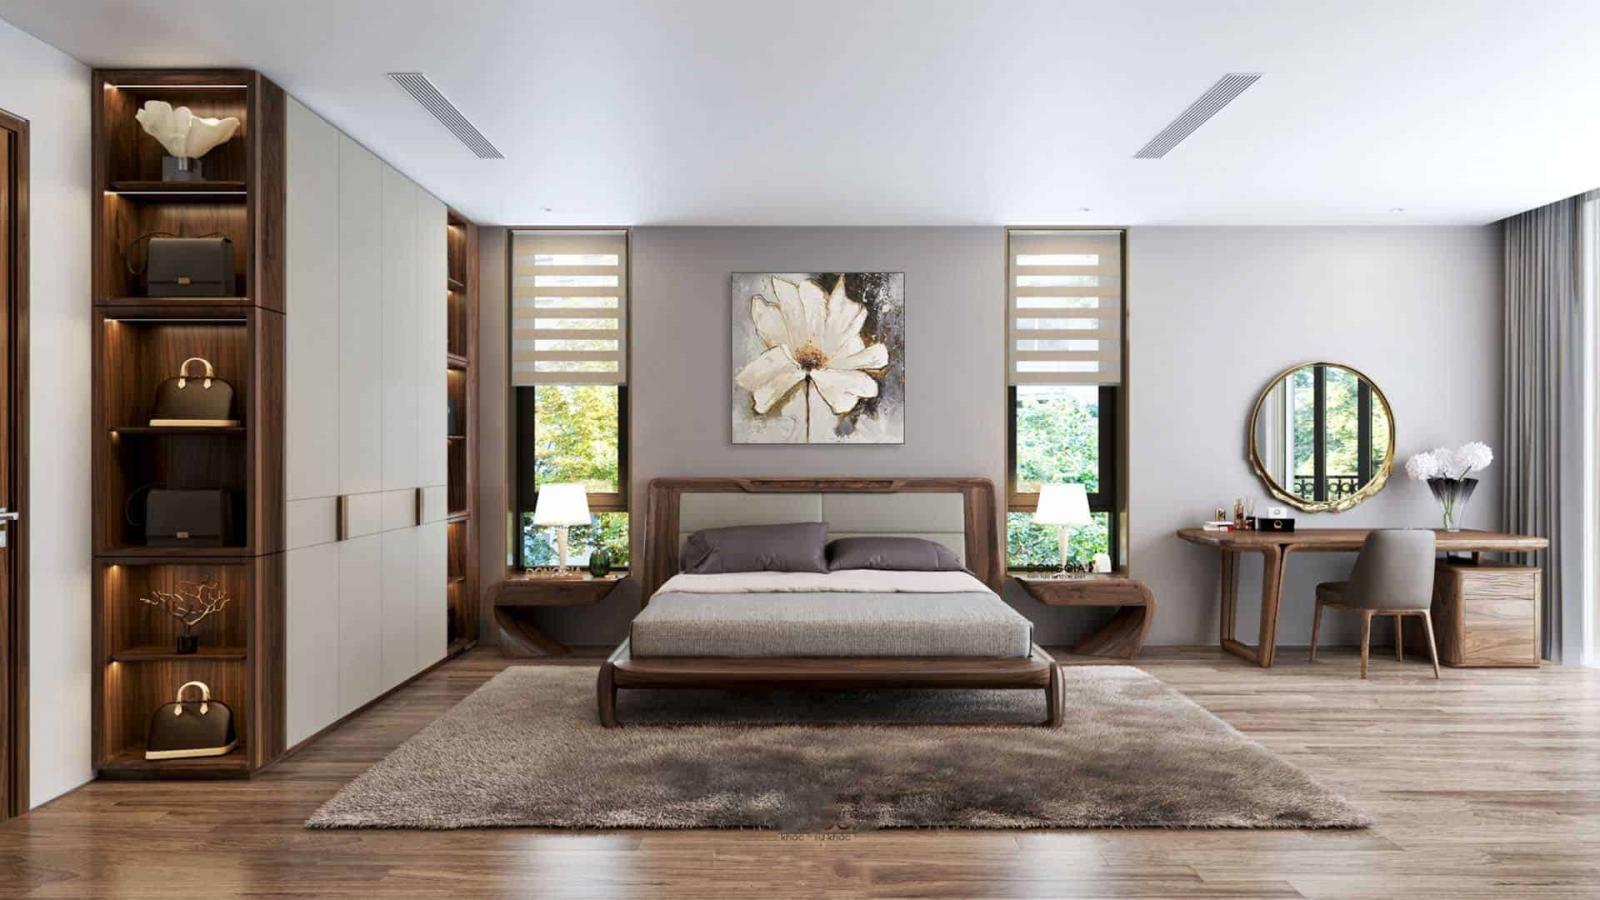 Phòng ngủ master dành cho mẫu biệt thự nhà vườn 1 tầng với diện tích rộng rãi, bài trí nội thất sang trọng, phối kết màu sắc hài hòa.